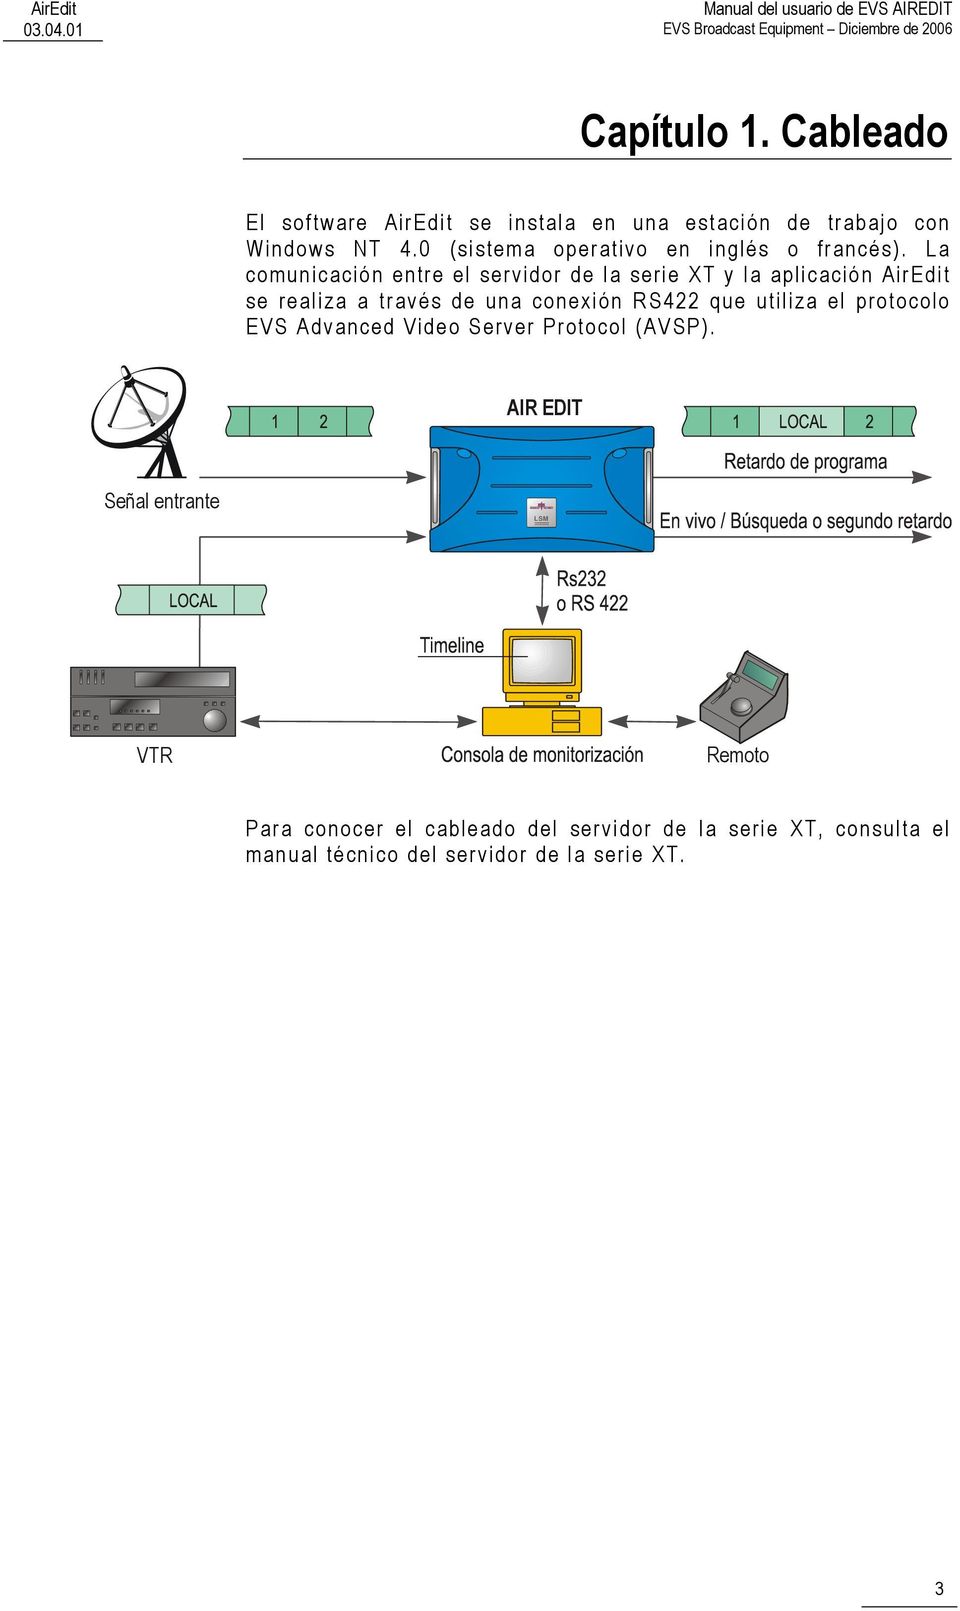 La comunicación entre el servidor de la serie XT y la aplicación AirEdit se realiza a través de una conexión RS422 que utiliza